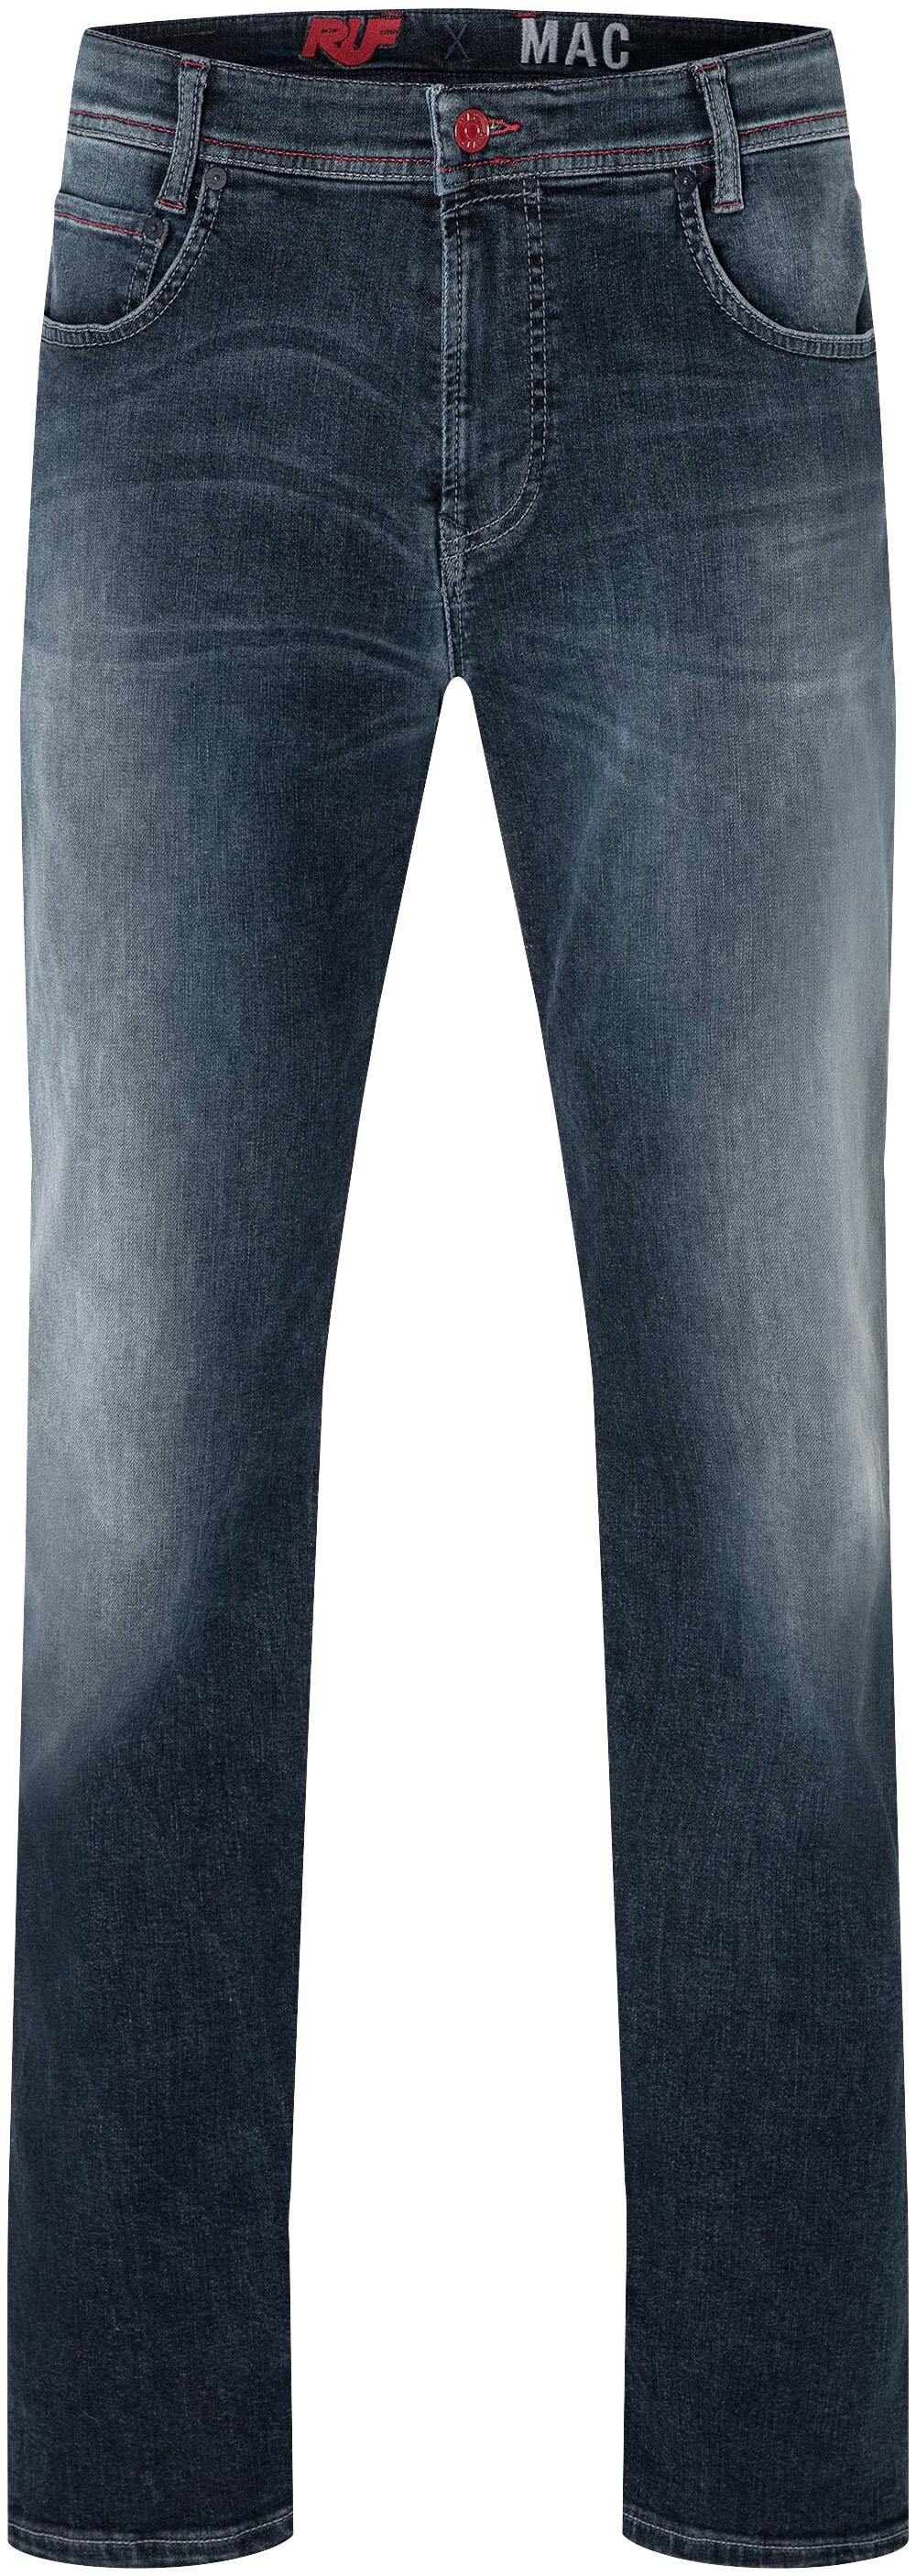 Обычные джинсы Mac, камень